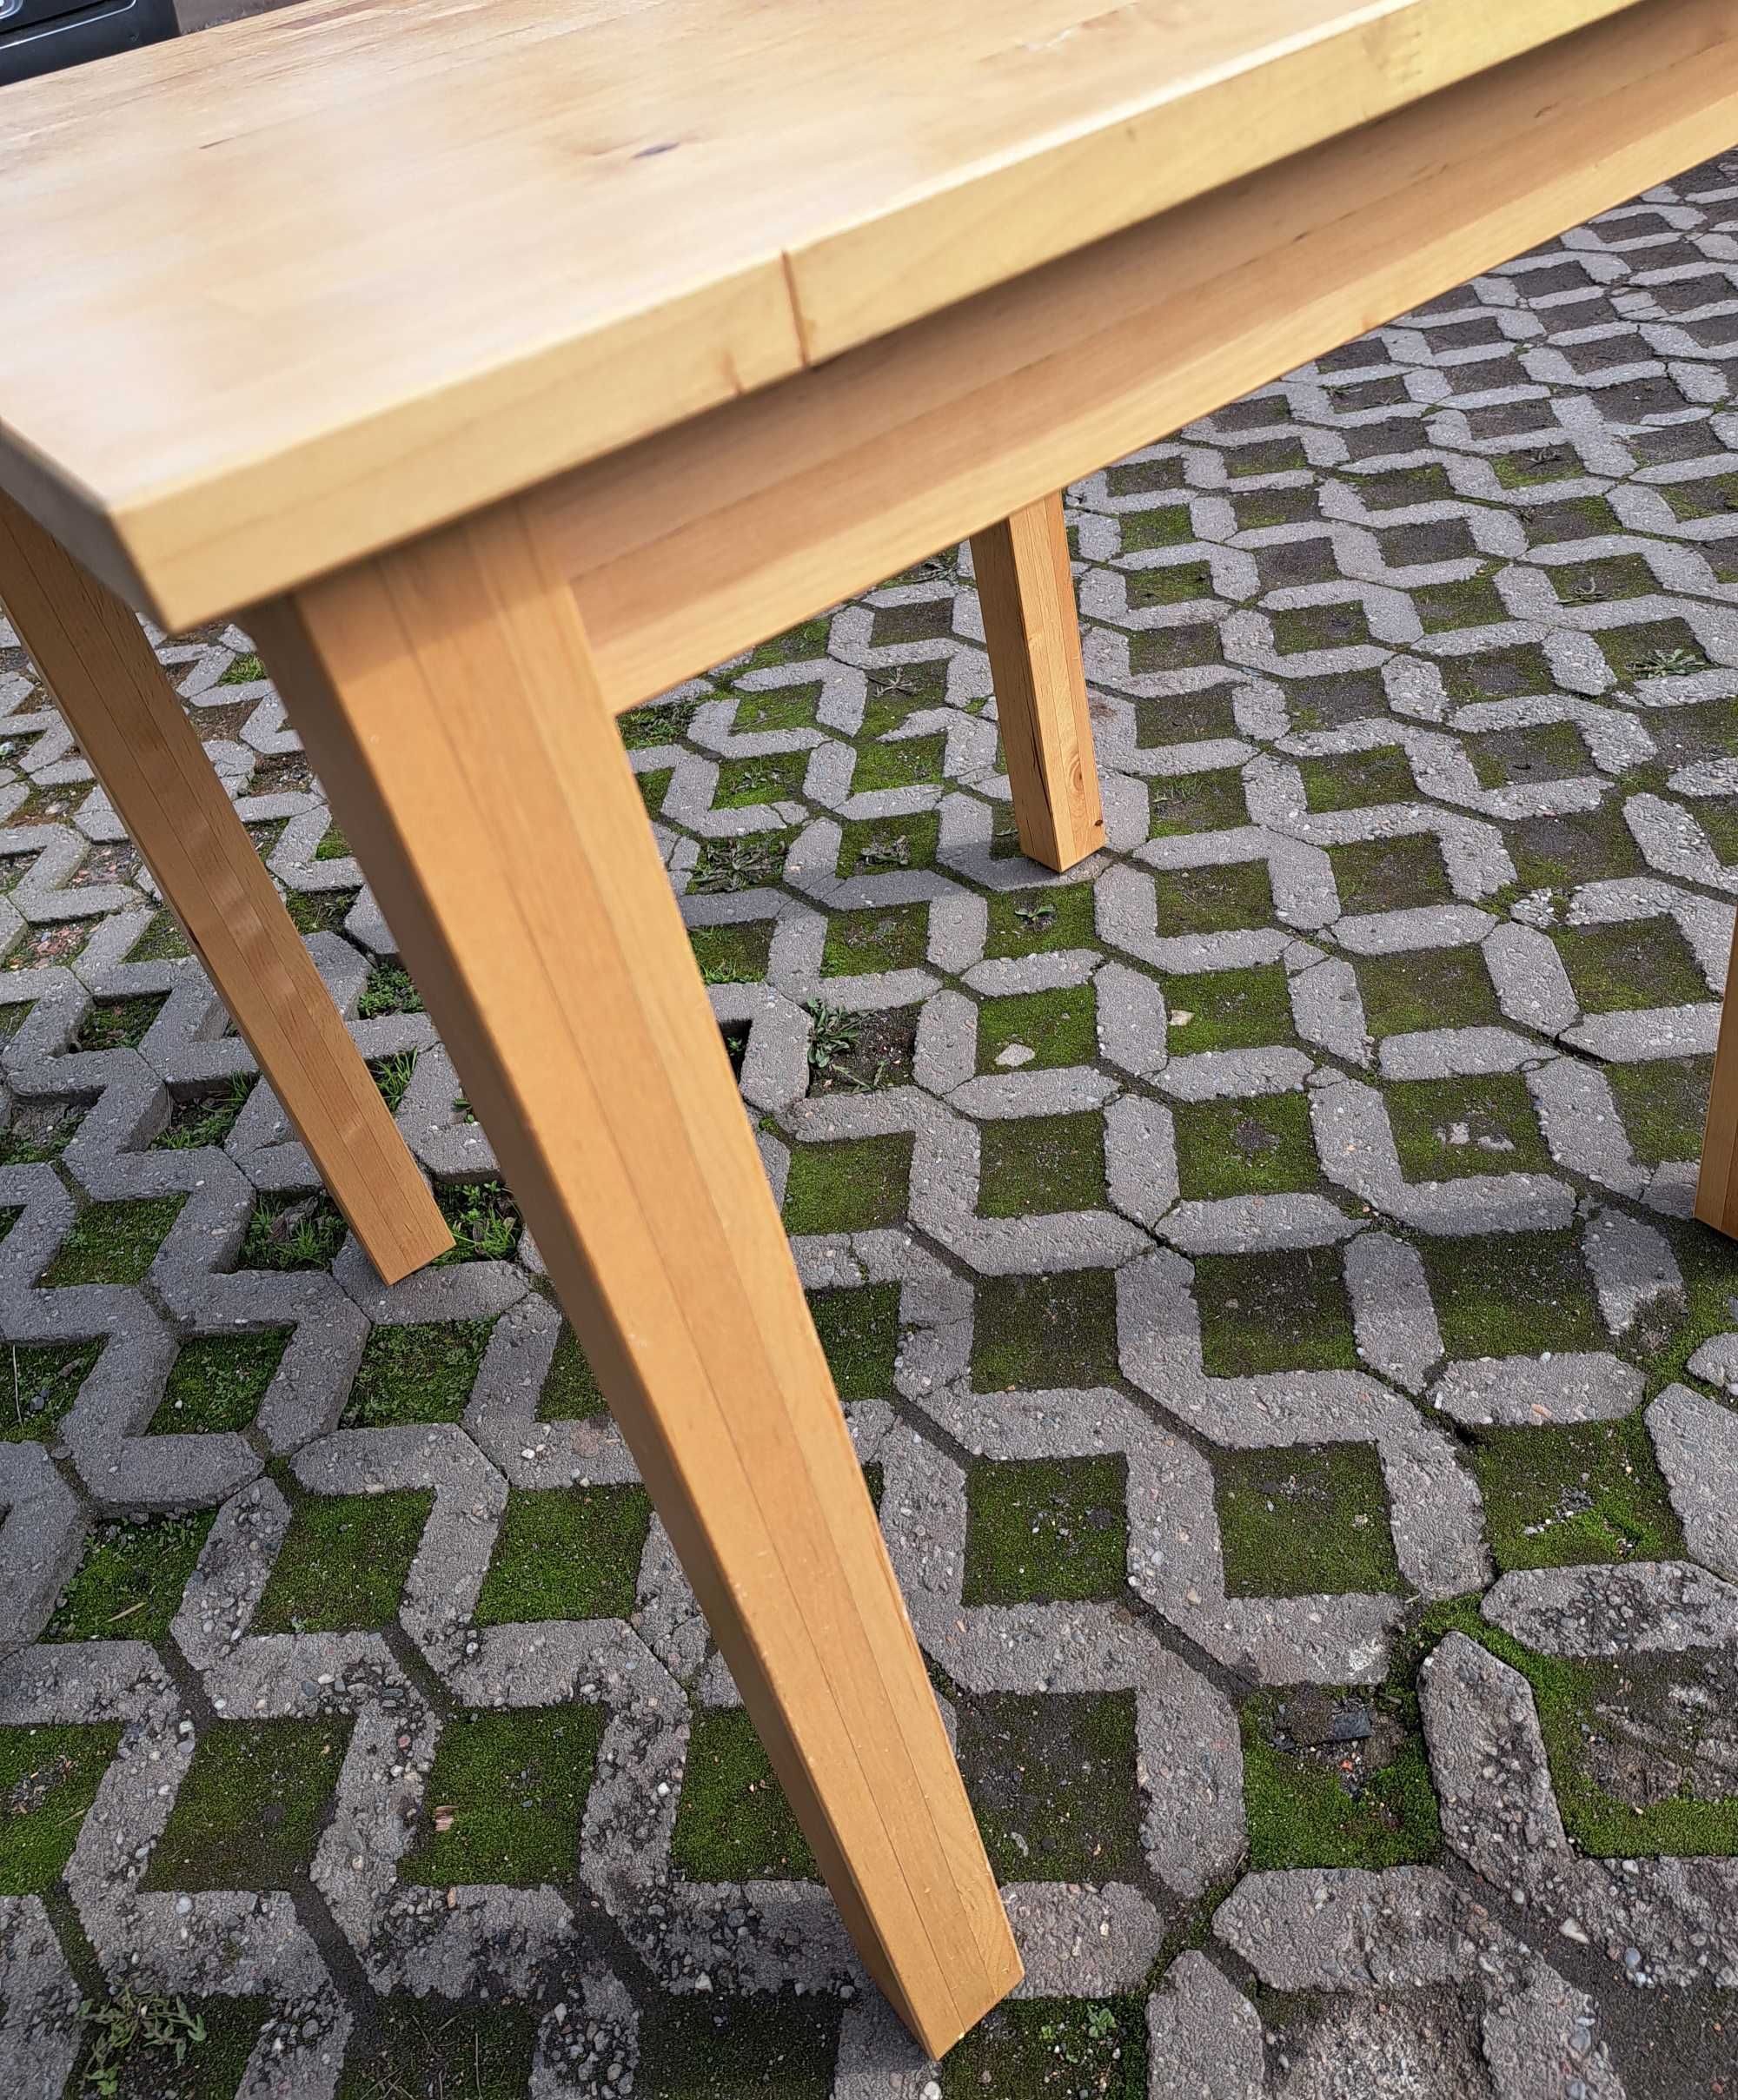 Stół drewniany, solidny